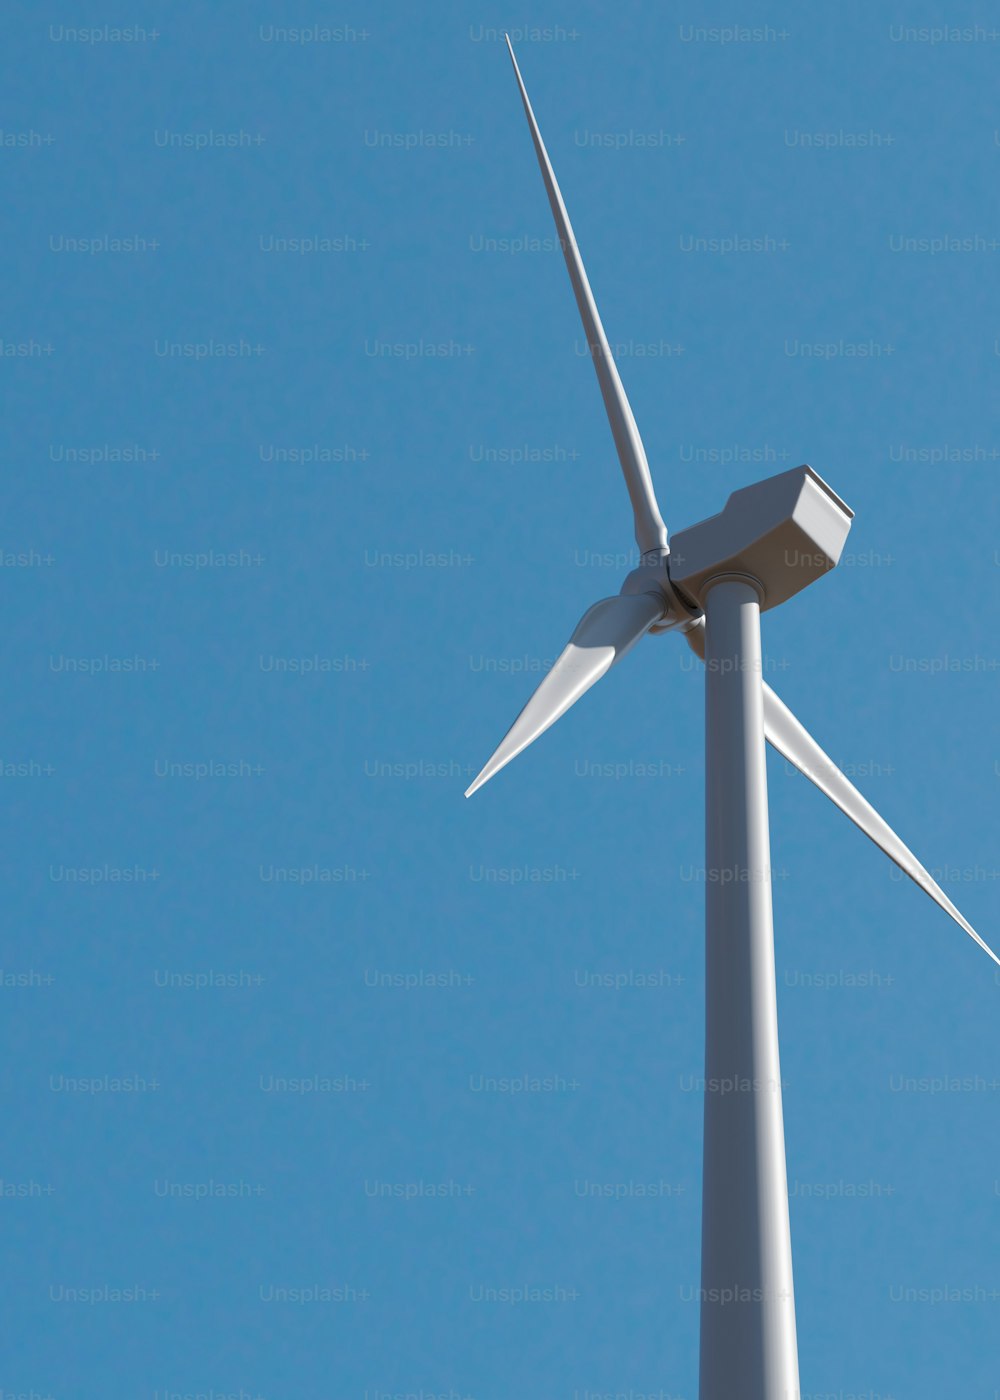 Eine Windkraftanlage wird vor blauem Himmel gezeigt